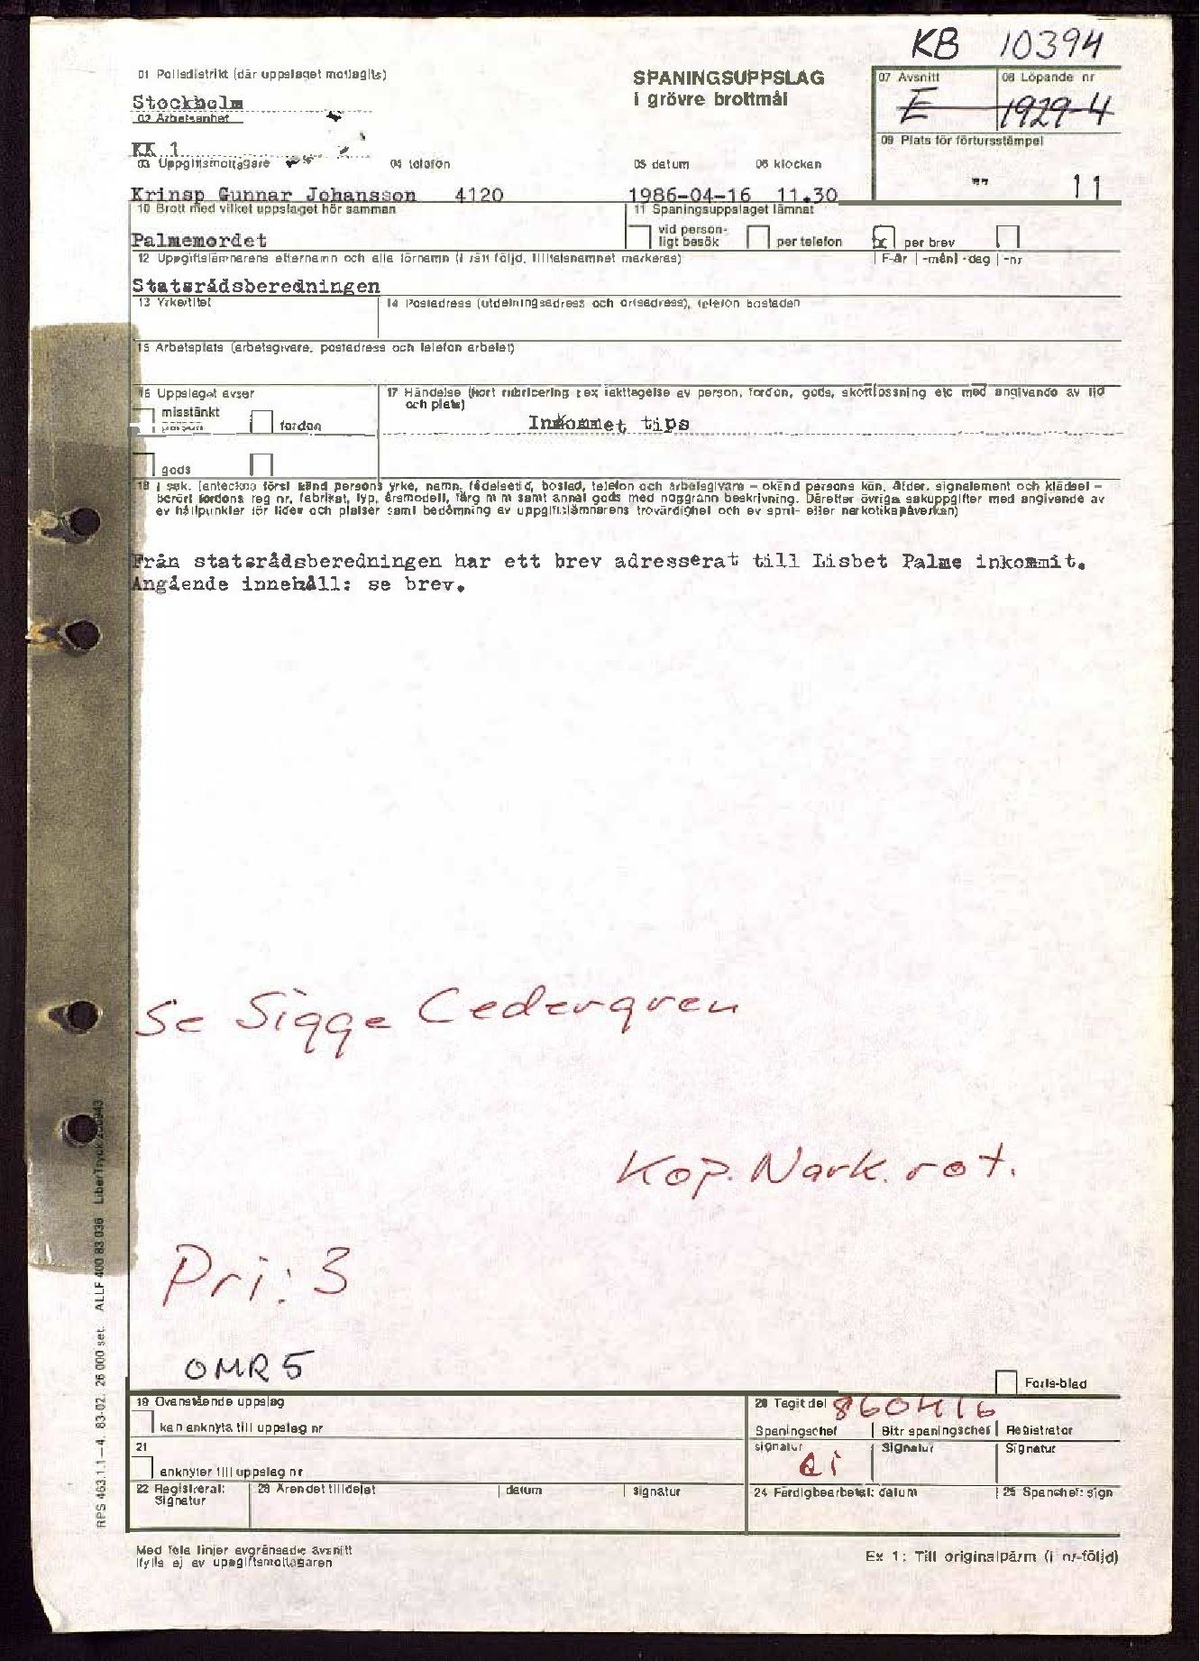 Pol-1986-04-16 1130 KB10394 Brev till Lispeth via Statsrådsberedningen.pdf